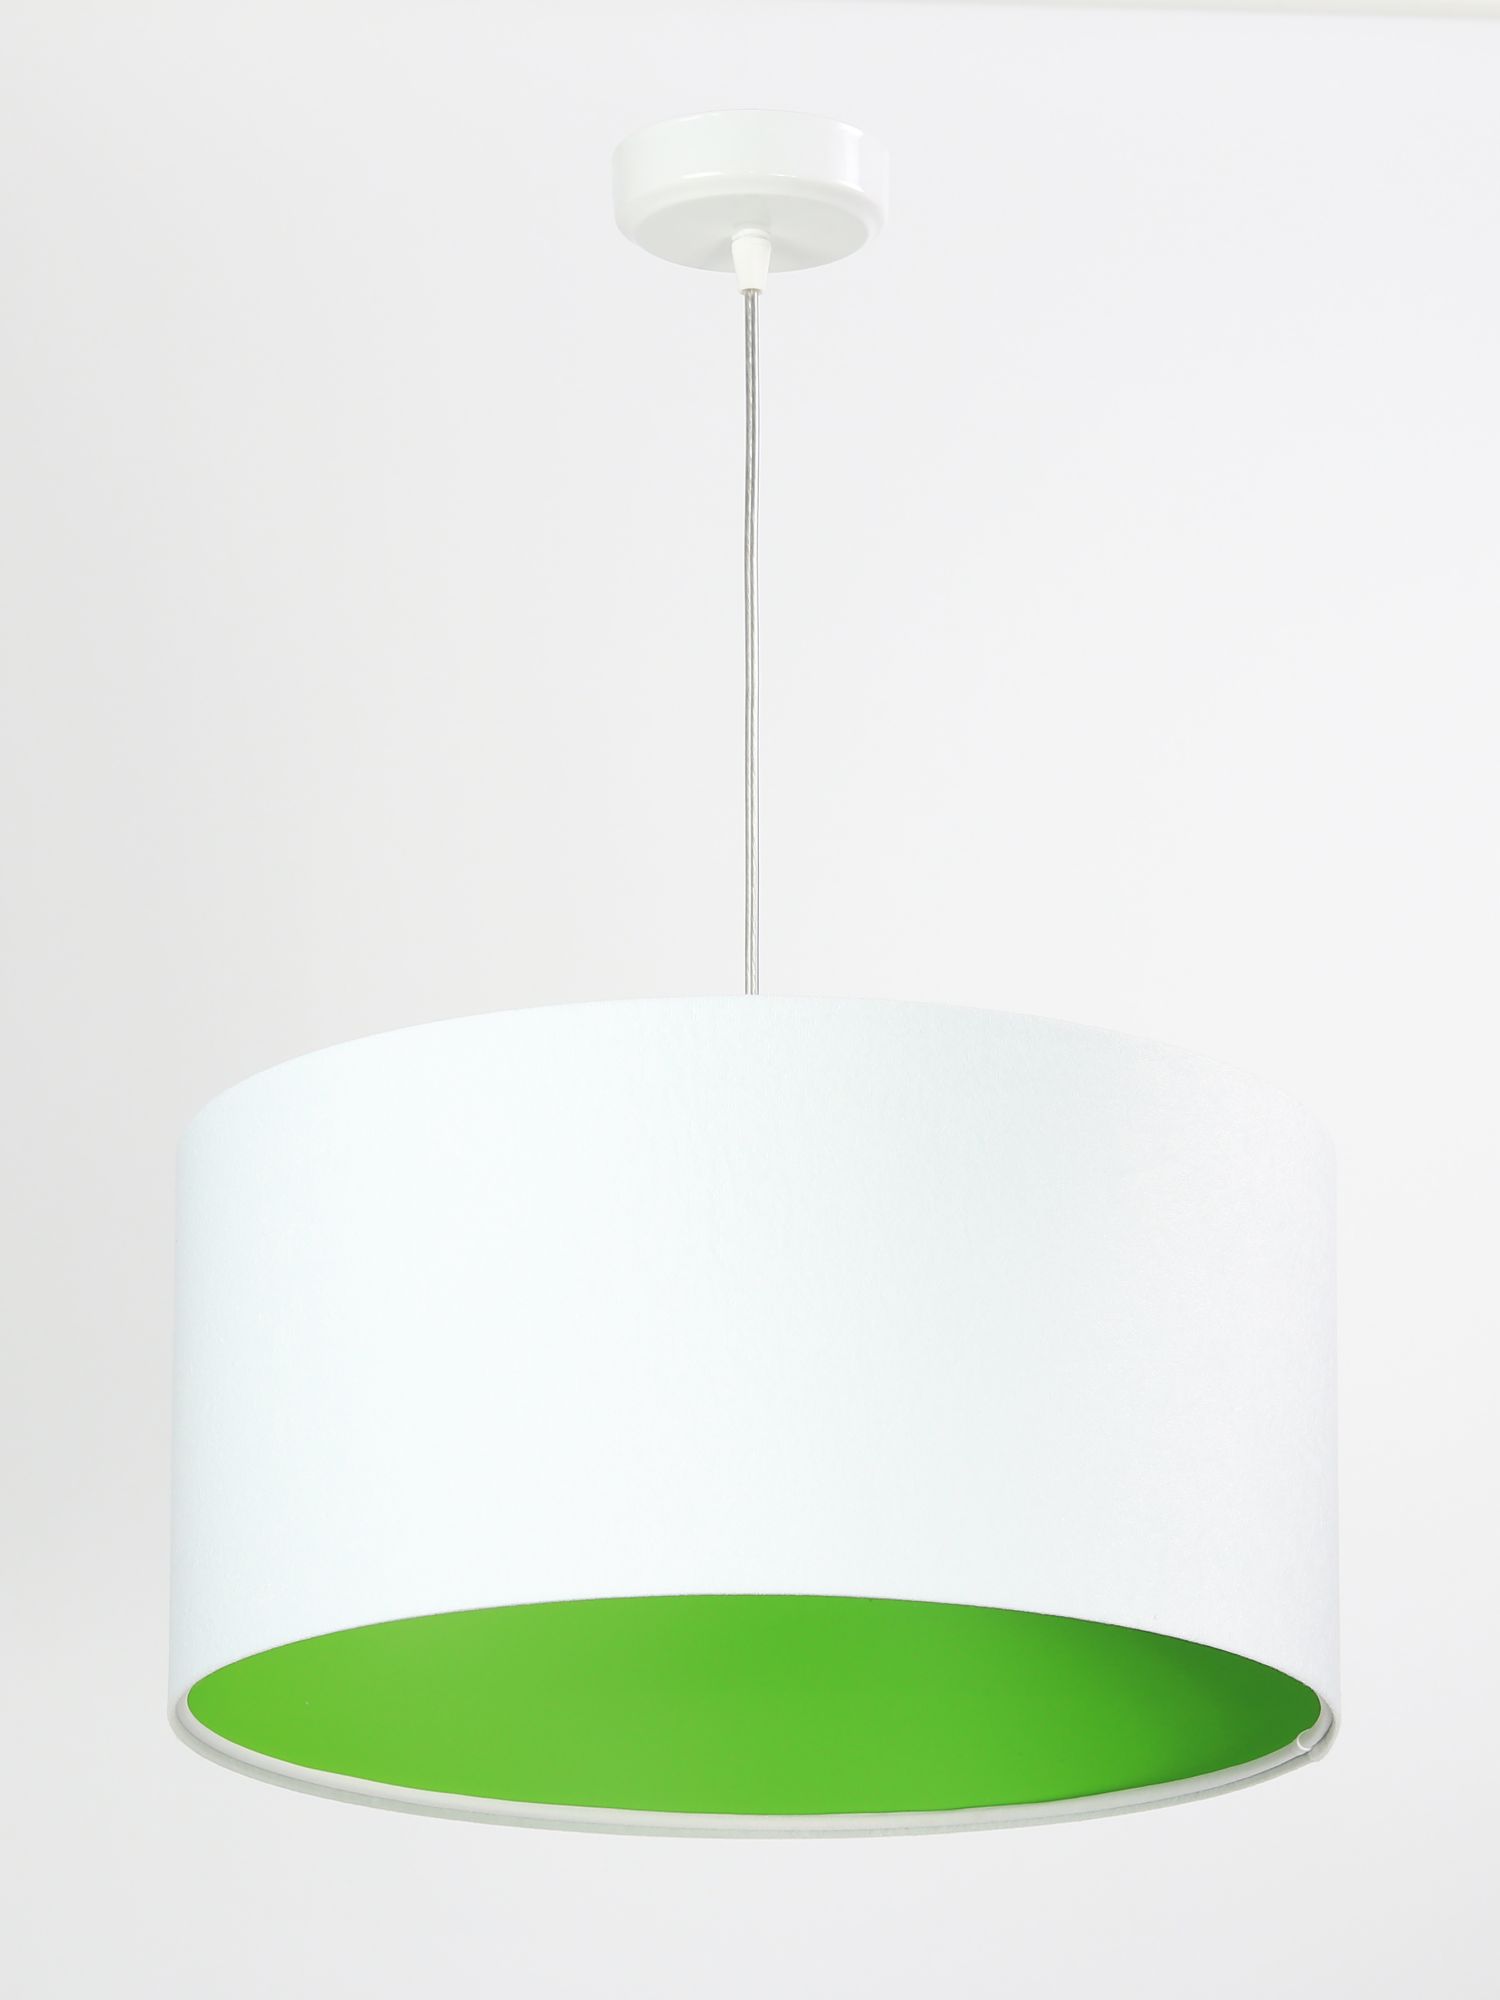 Pendelleuchte Weiß Grün Retro rund Esstisch Lampe